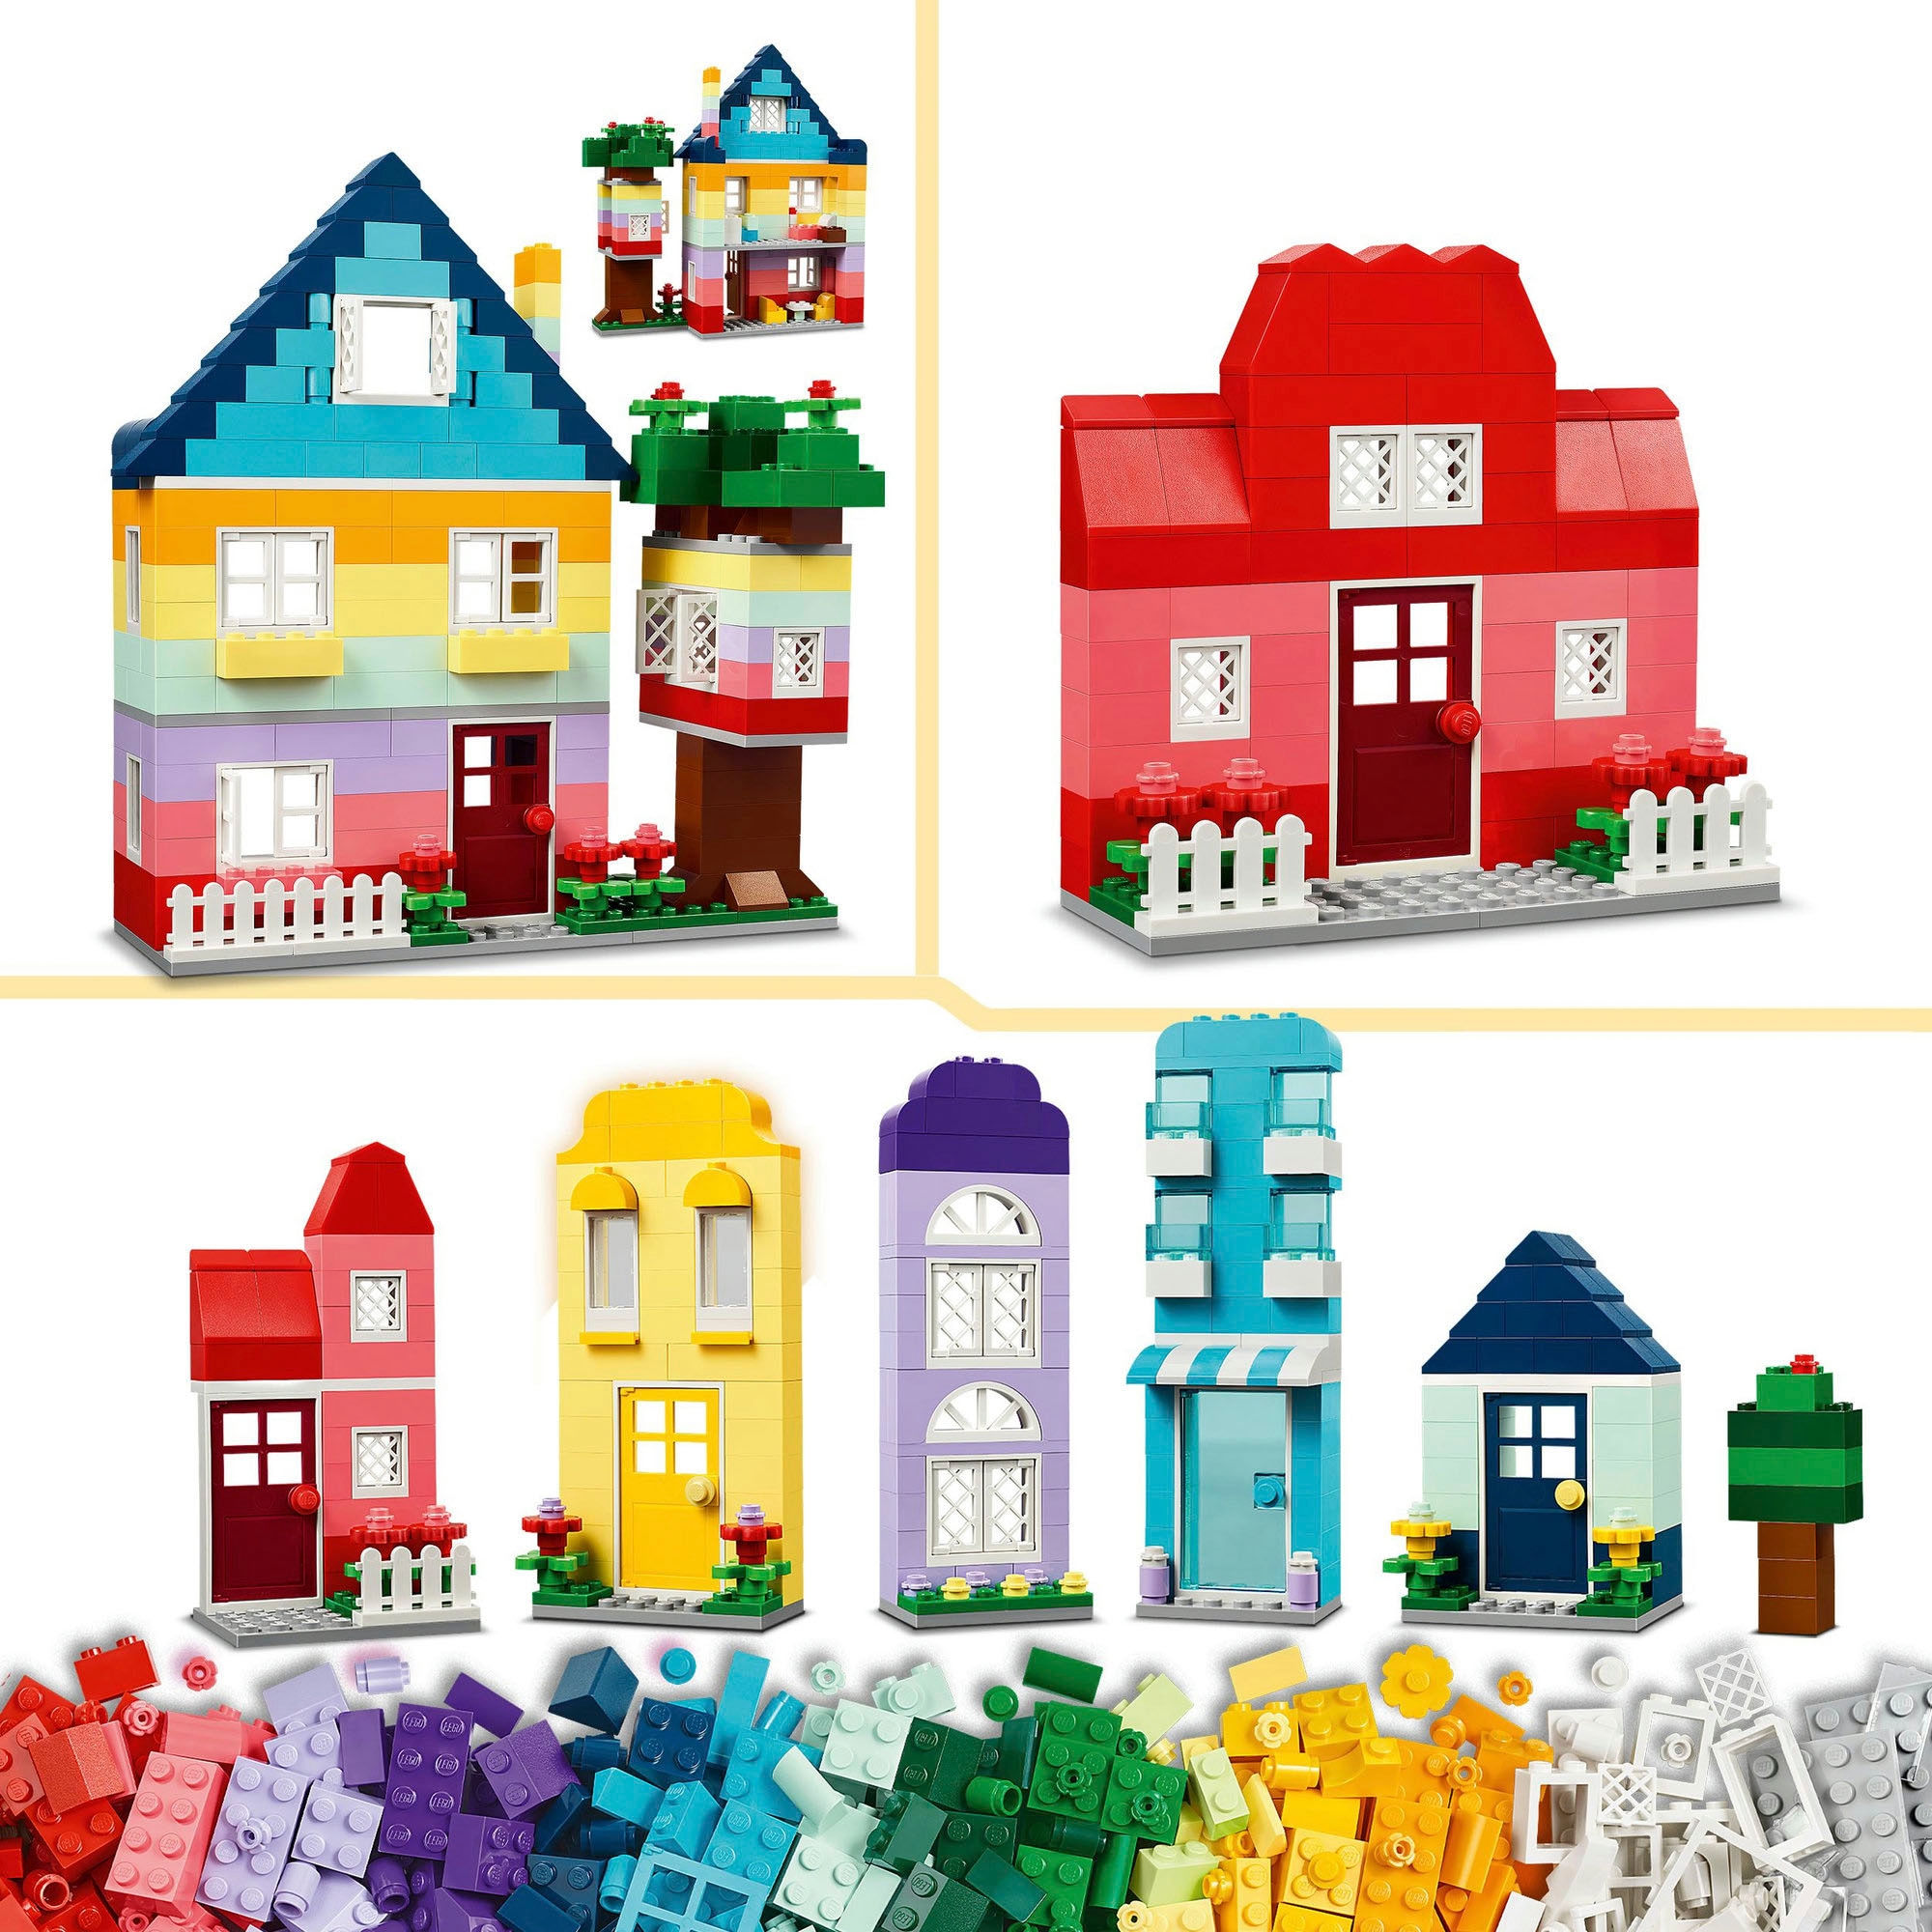 LEGO® Konstruktionsspielsteine »Kreative Häuser (11035), LEGO Classic«, (850 St.), Made in Europe